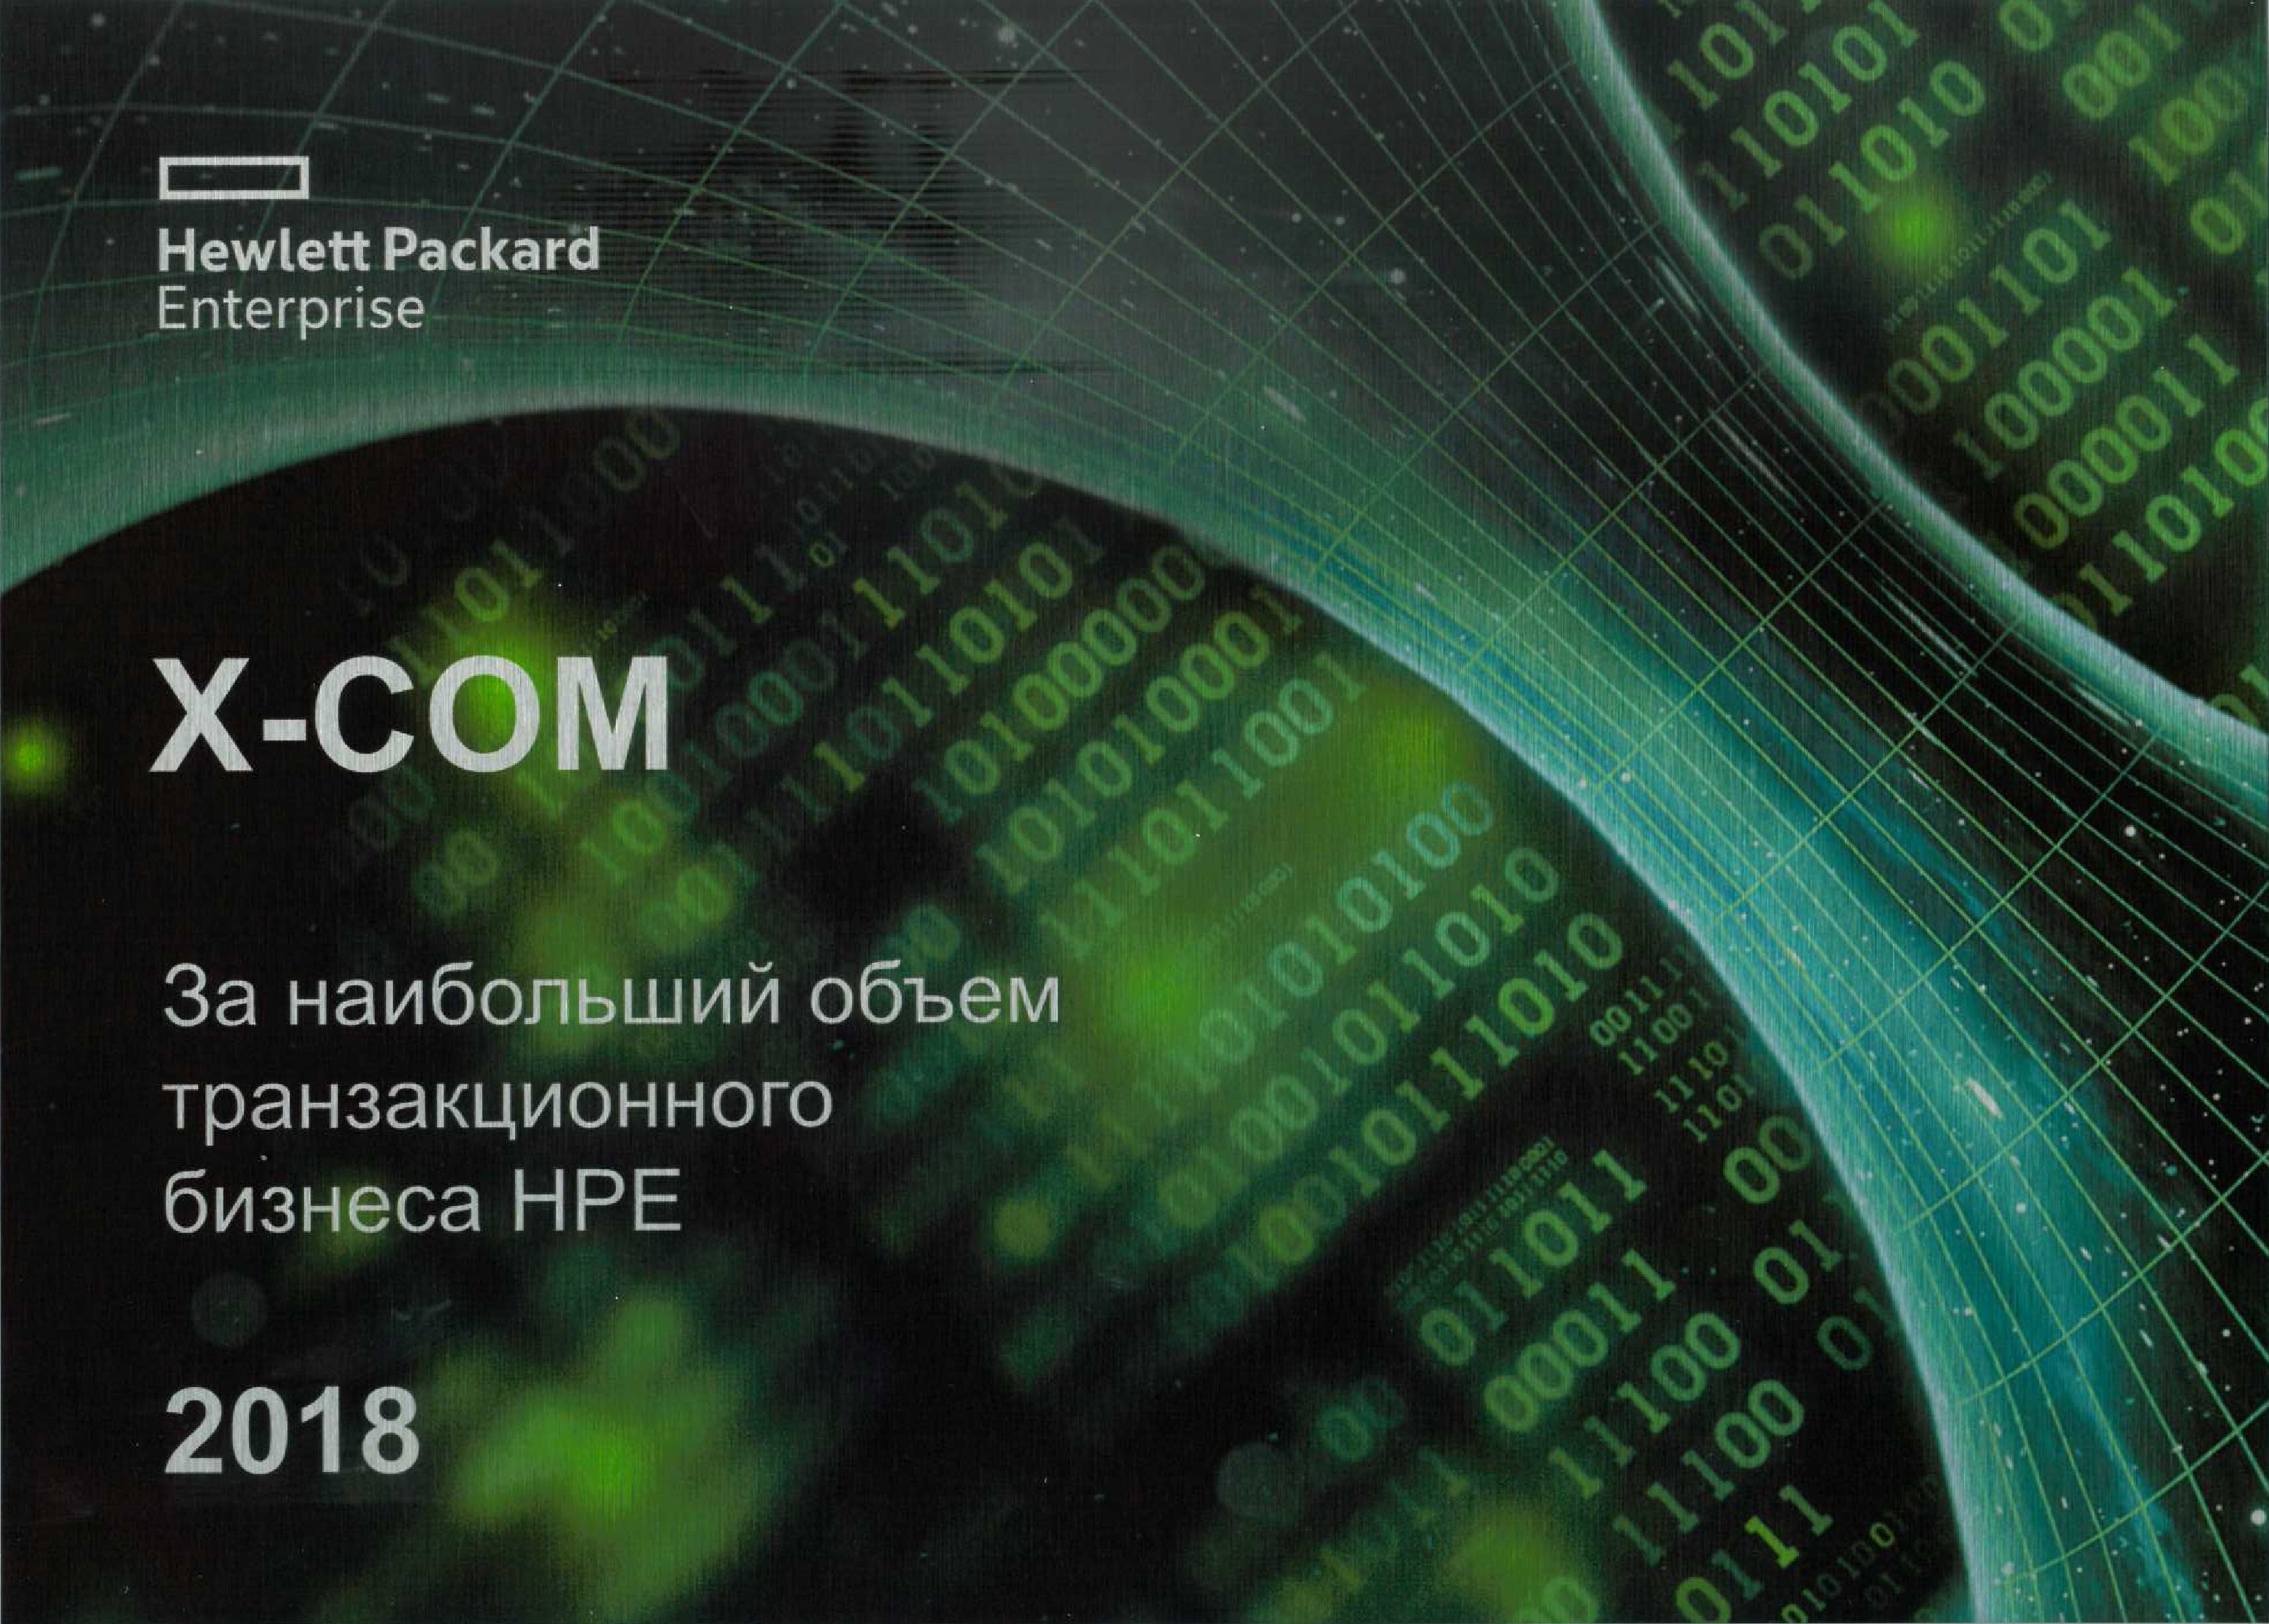  X-Com – лидер транзакционного бизнеса HPE в России